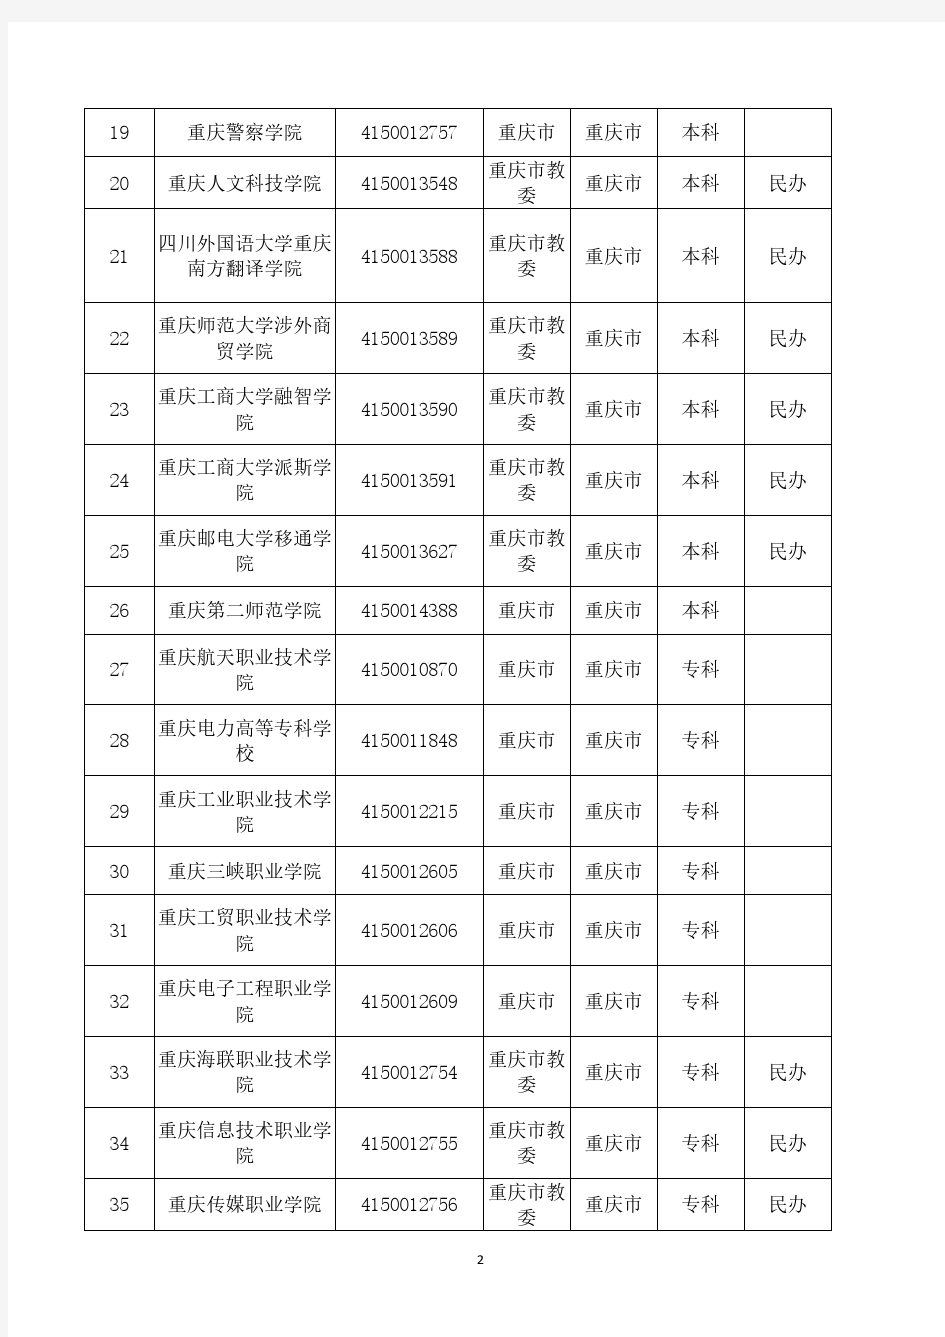 2019年度最新统计：重庆市普通高等学校名录(65所)